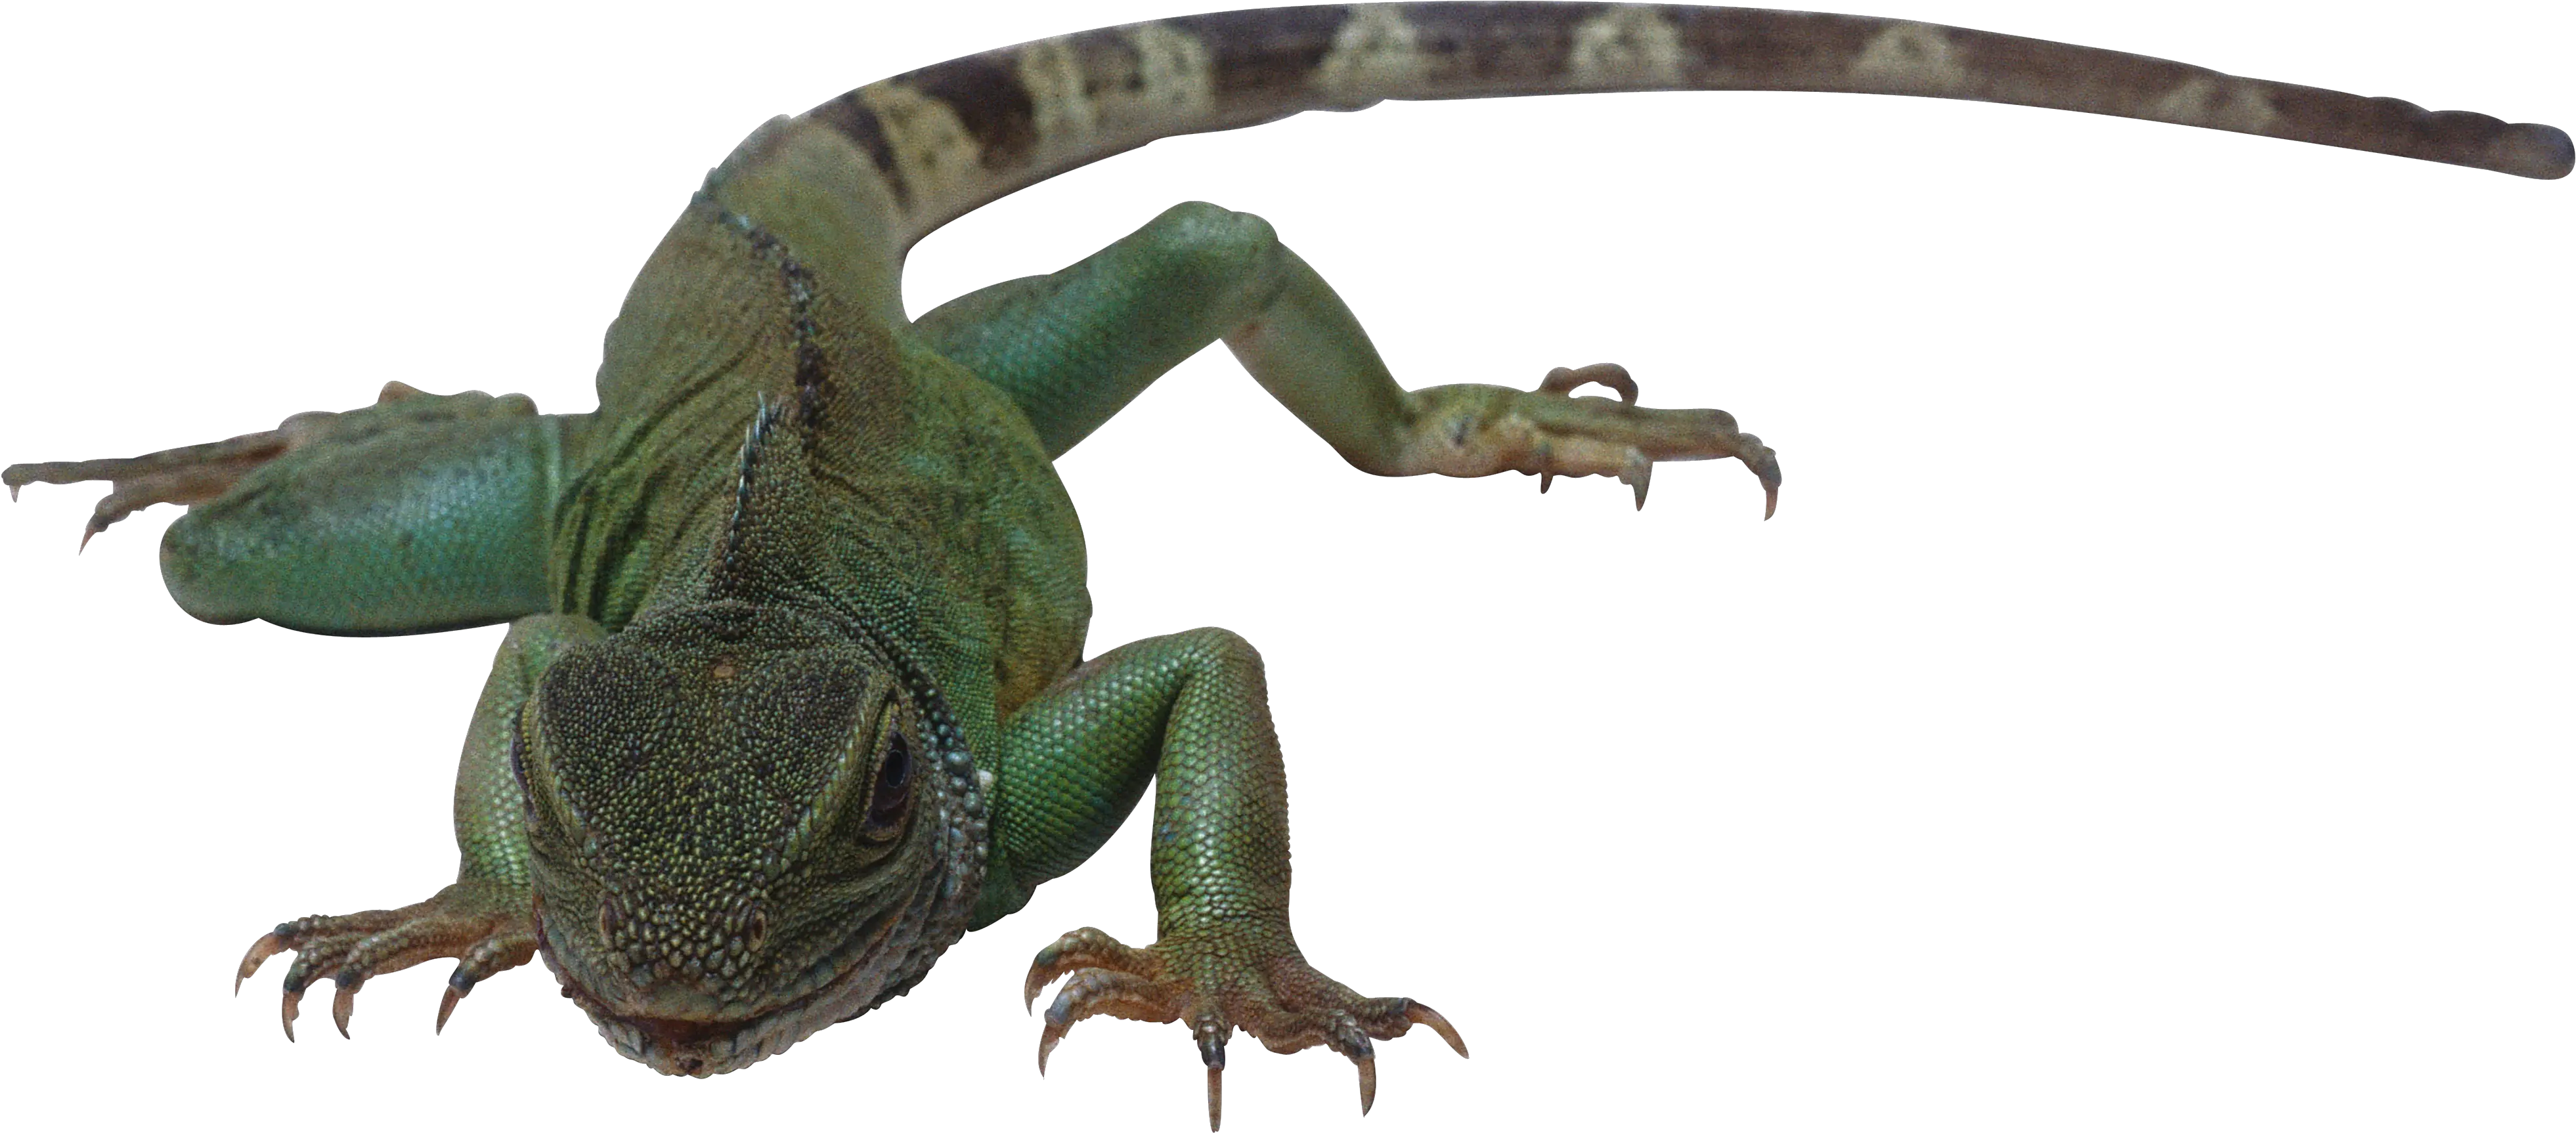 Lizard Png Transparent